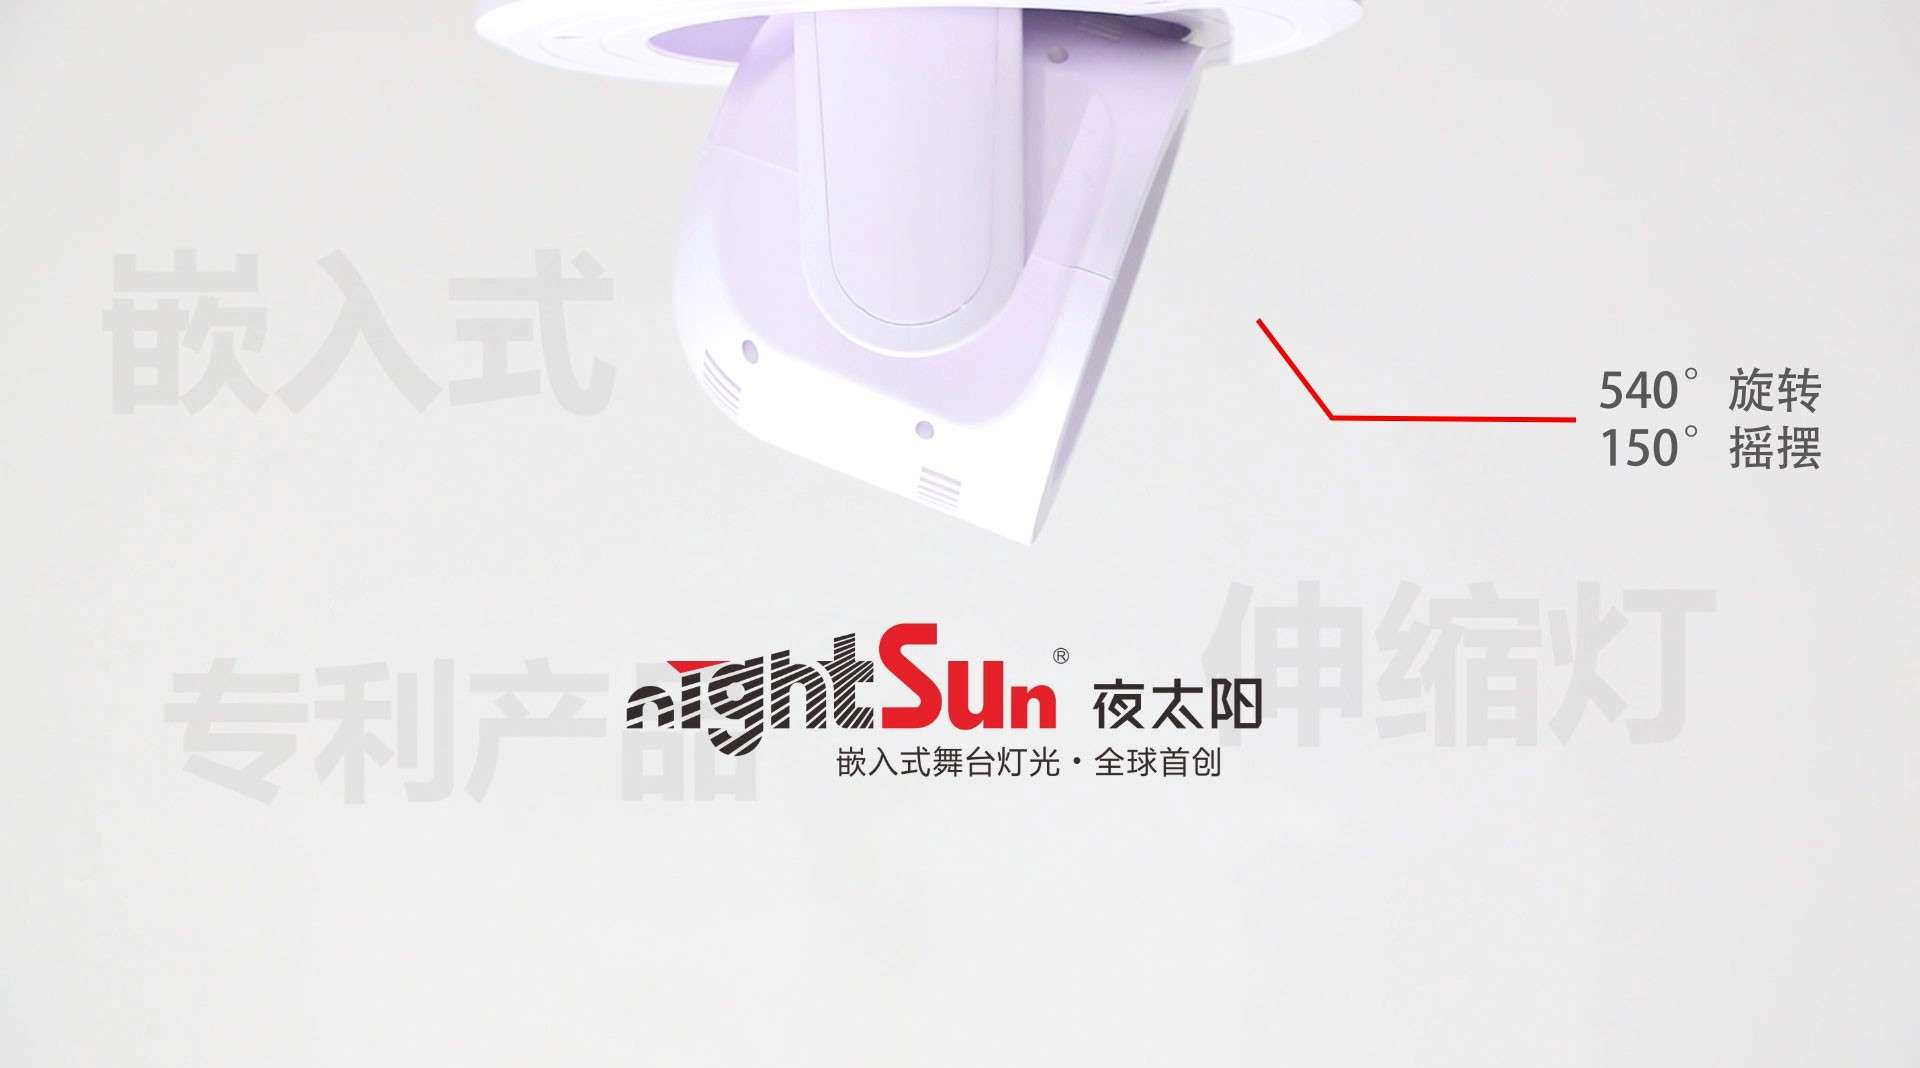 夜太阳专利产品 | 嵌入式伸缩灯荣获多项国家专利！